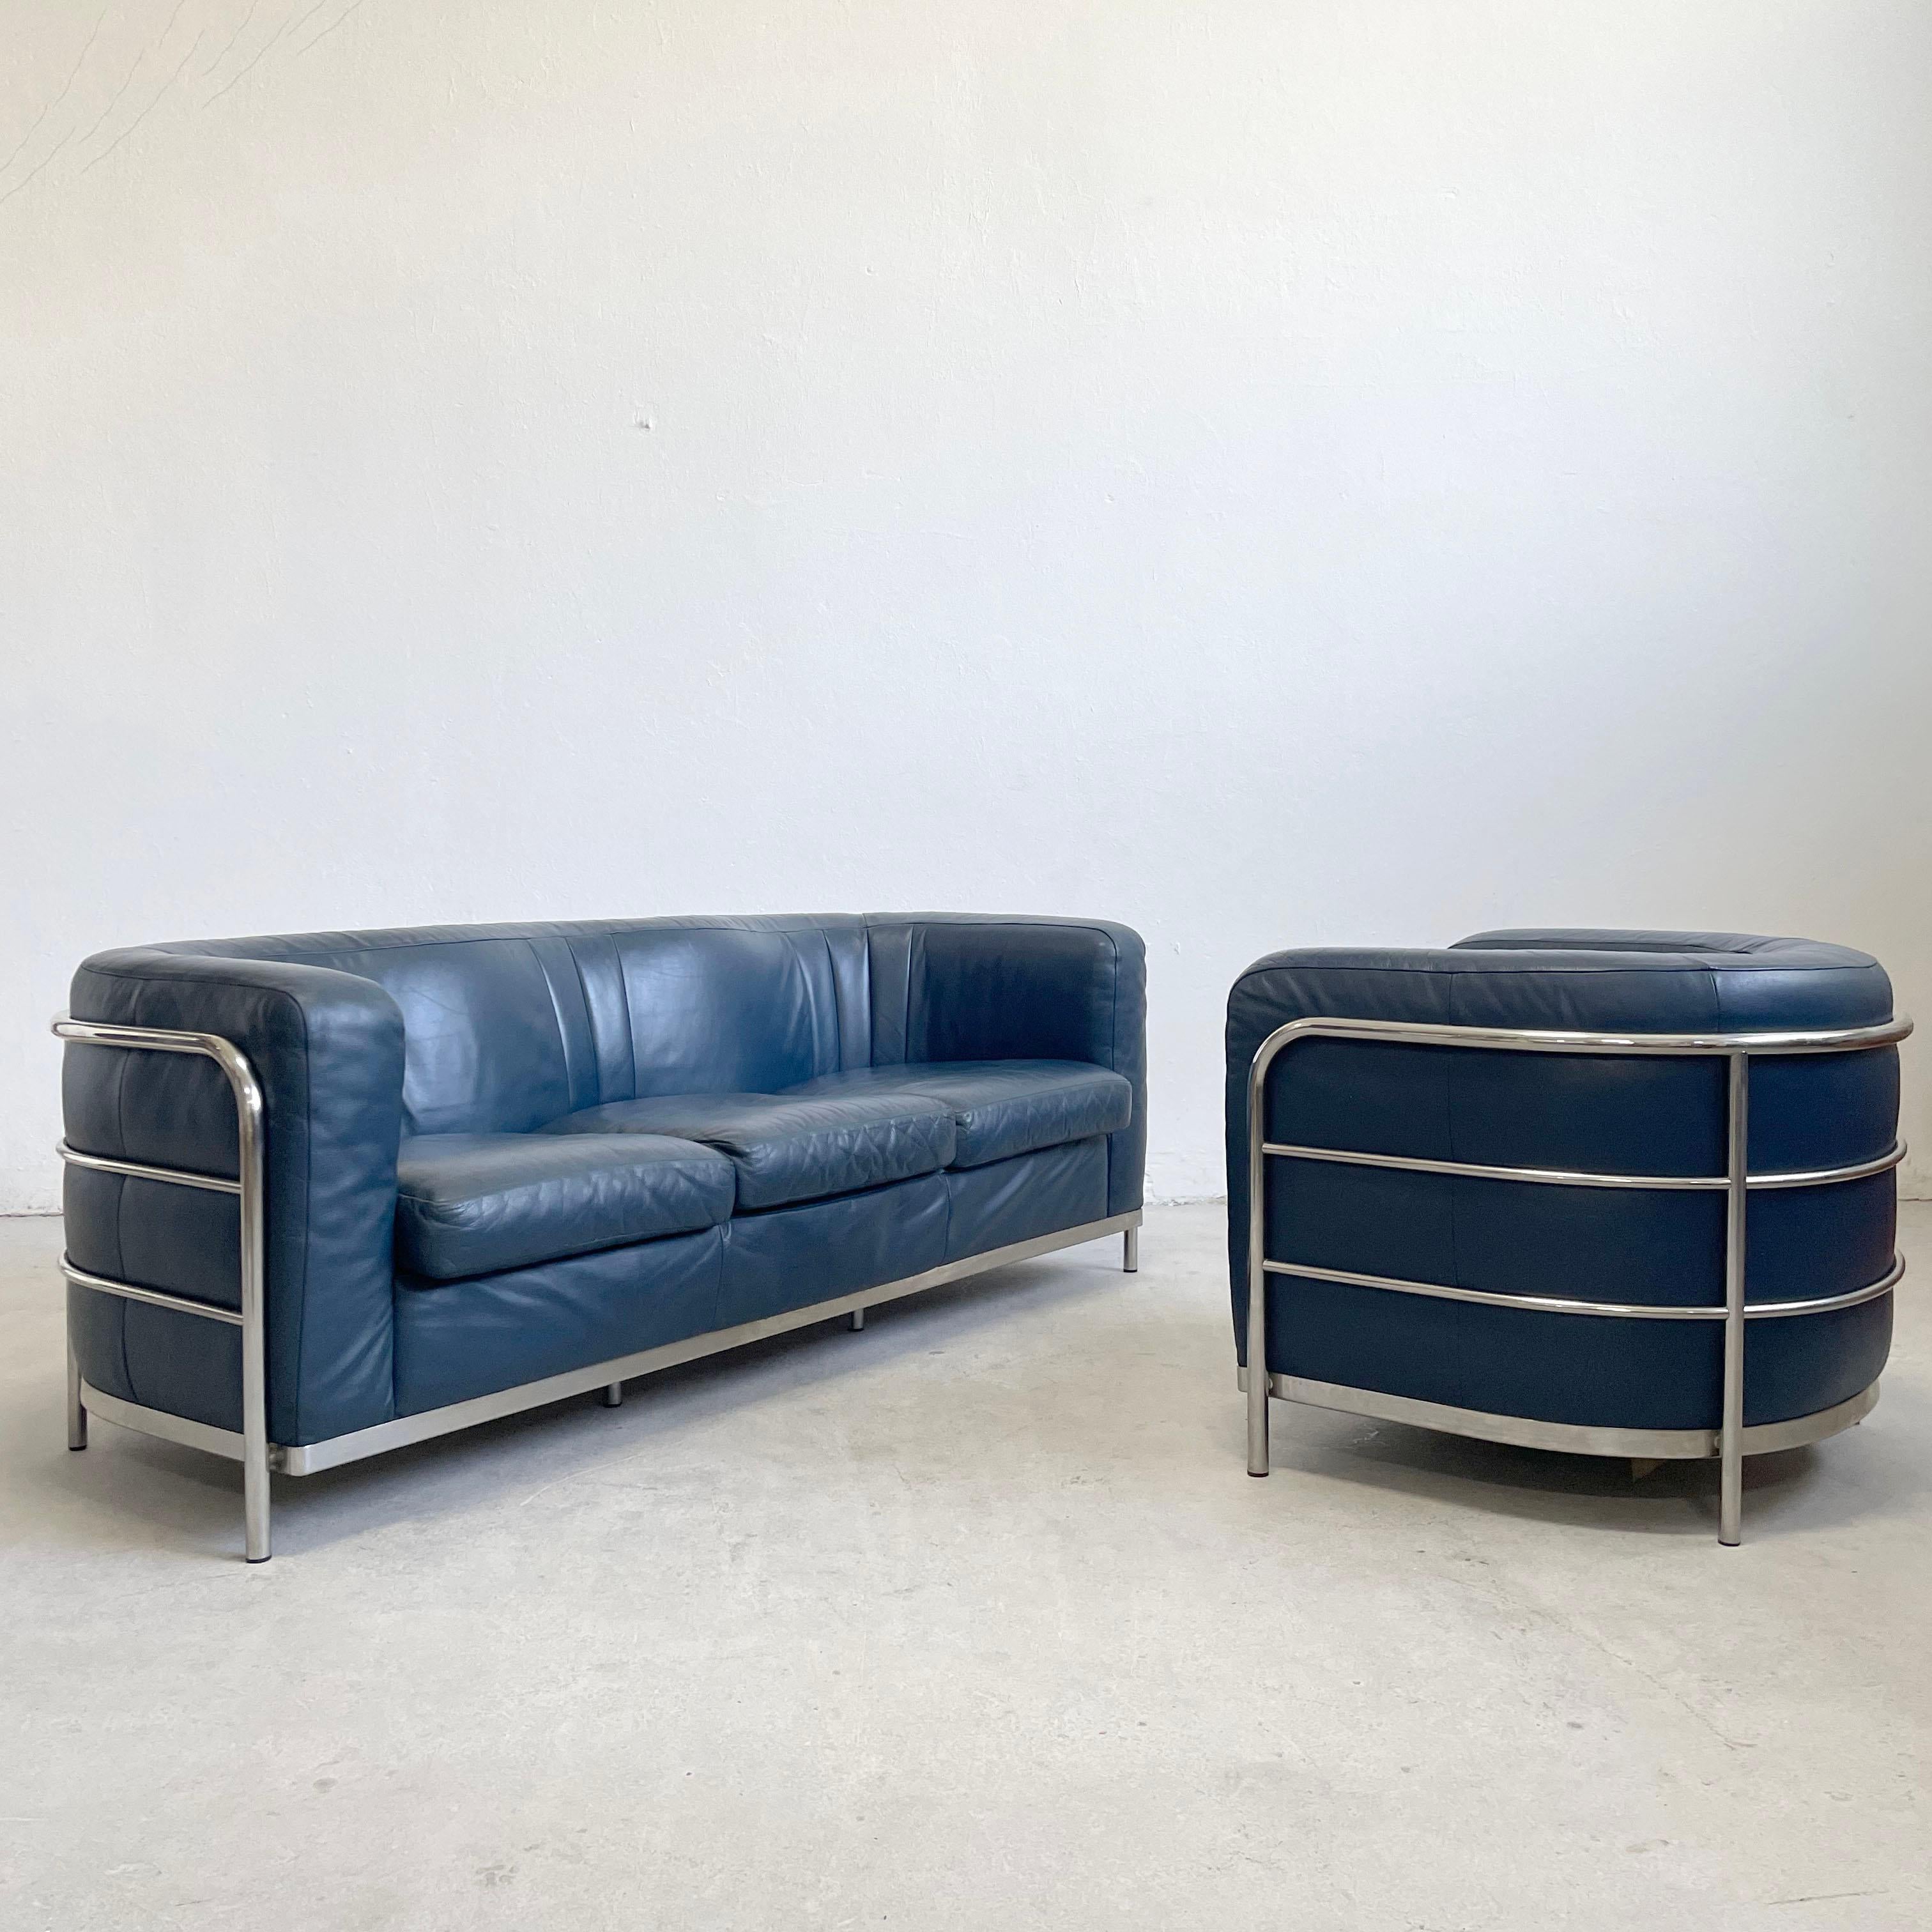 De Pas, D'Urbino et Lomazzi pour Zanotta, ensemble de salon composé d'un canapé et d'un fauteuil, modèle 'Onda', cuir bleu, chrome, Italie, 1985

Canapé 